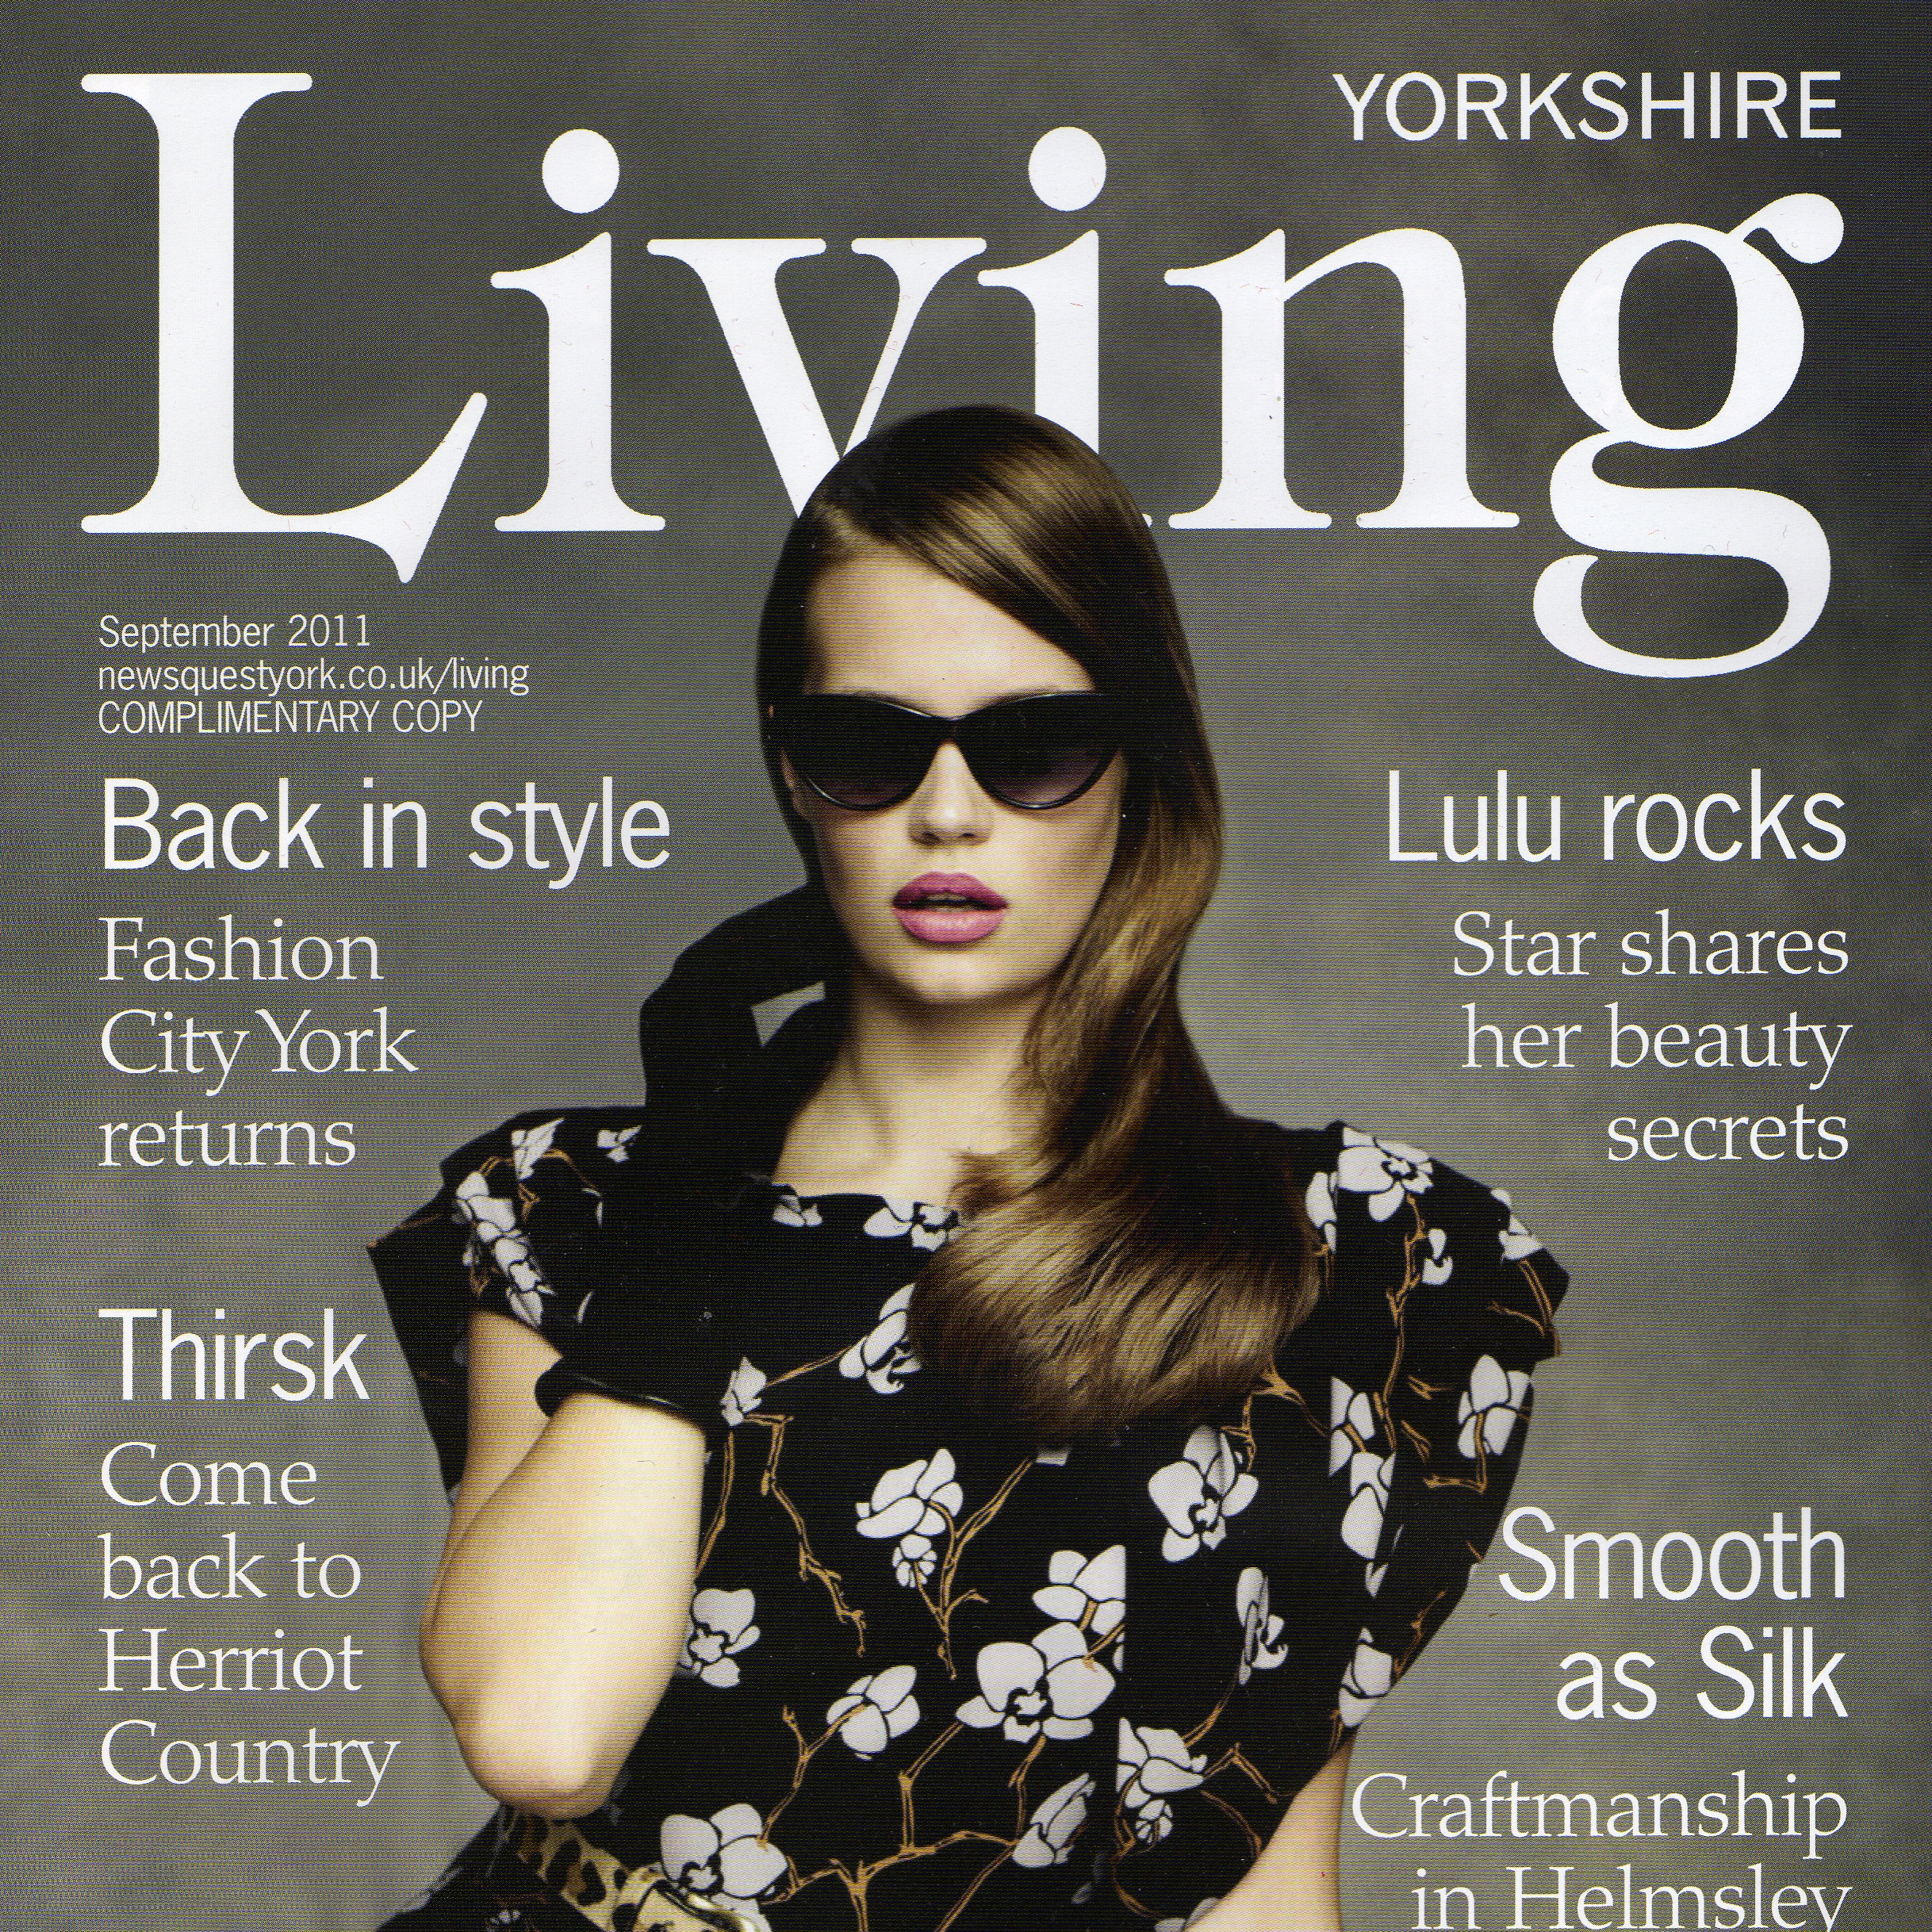 Yorkshire living magazine cover.jpg